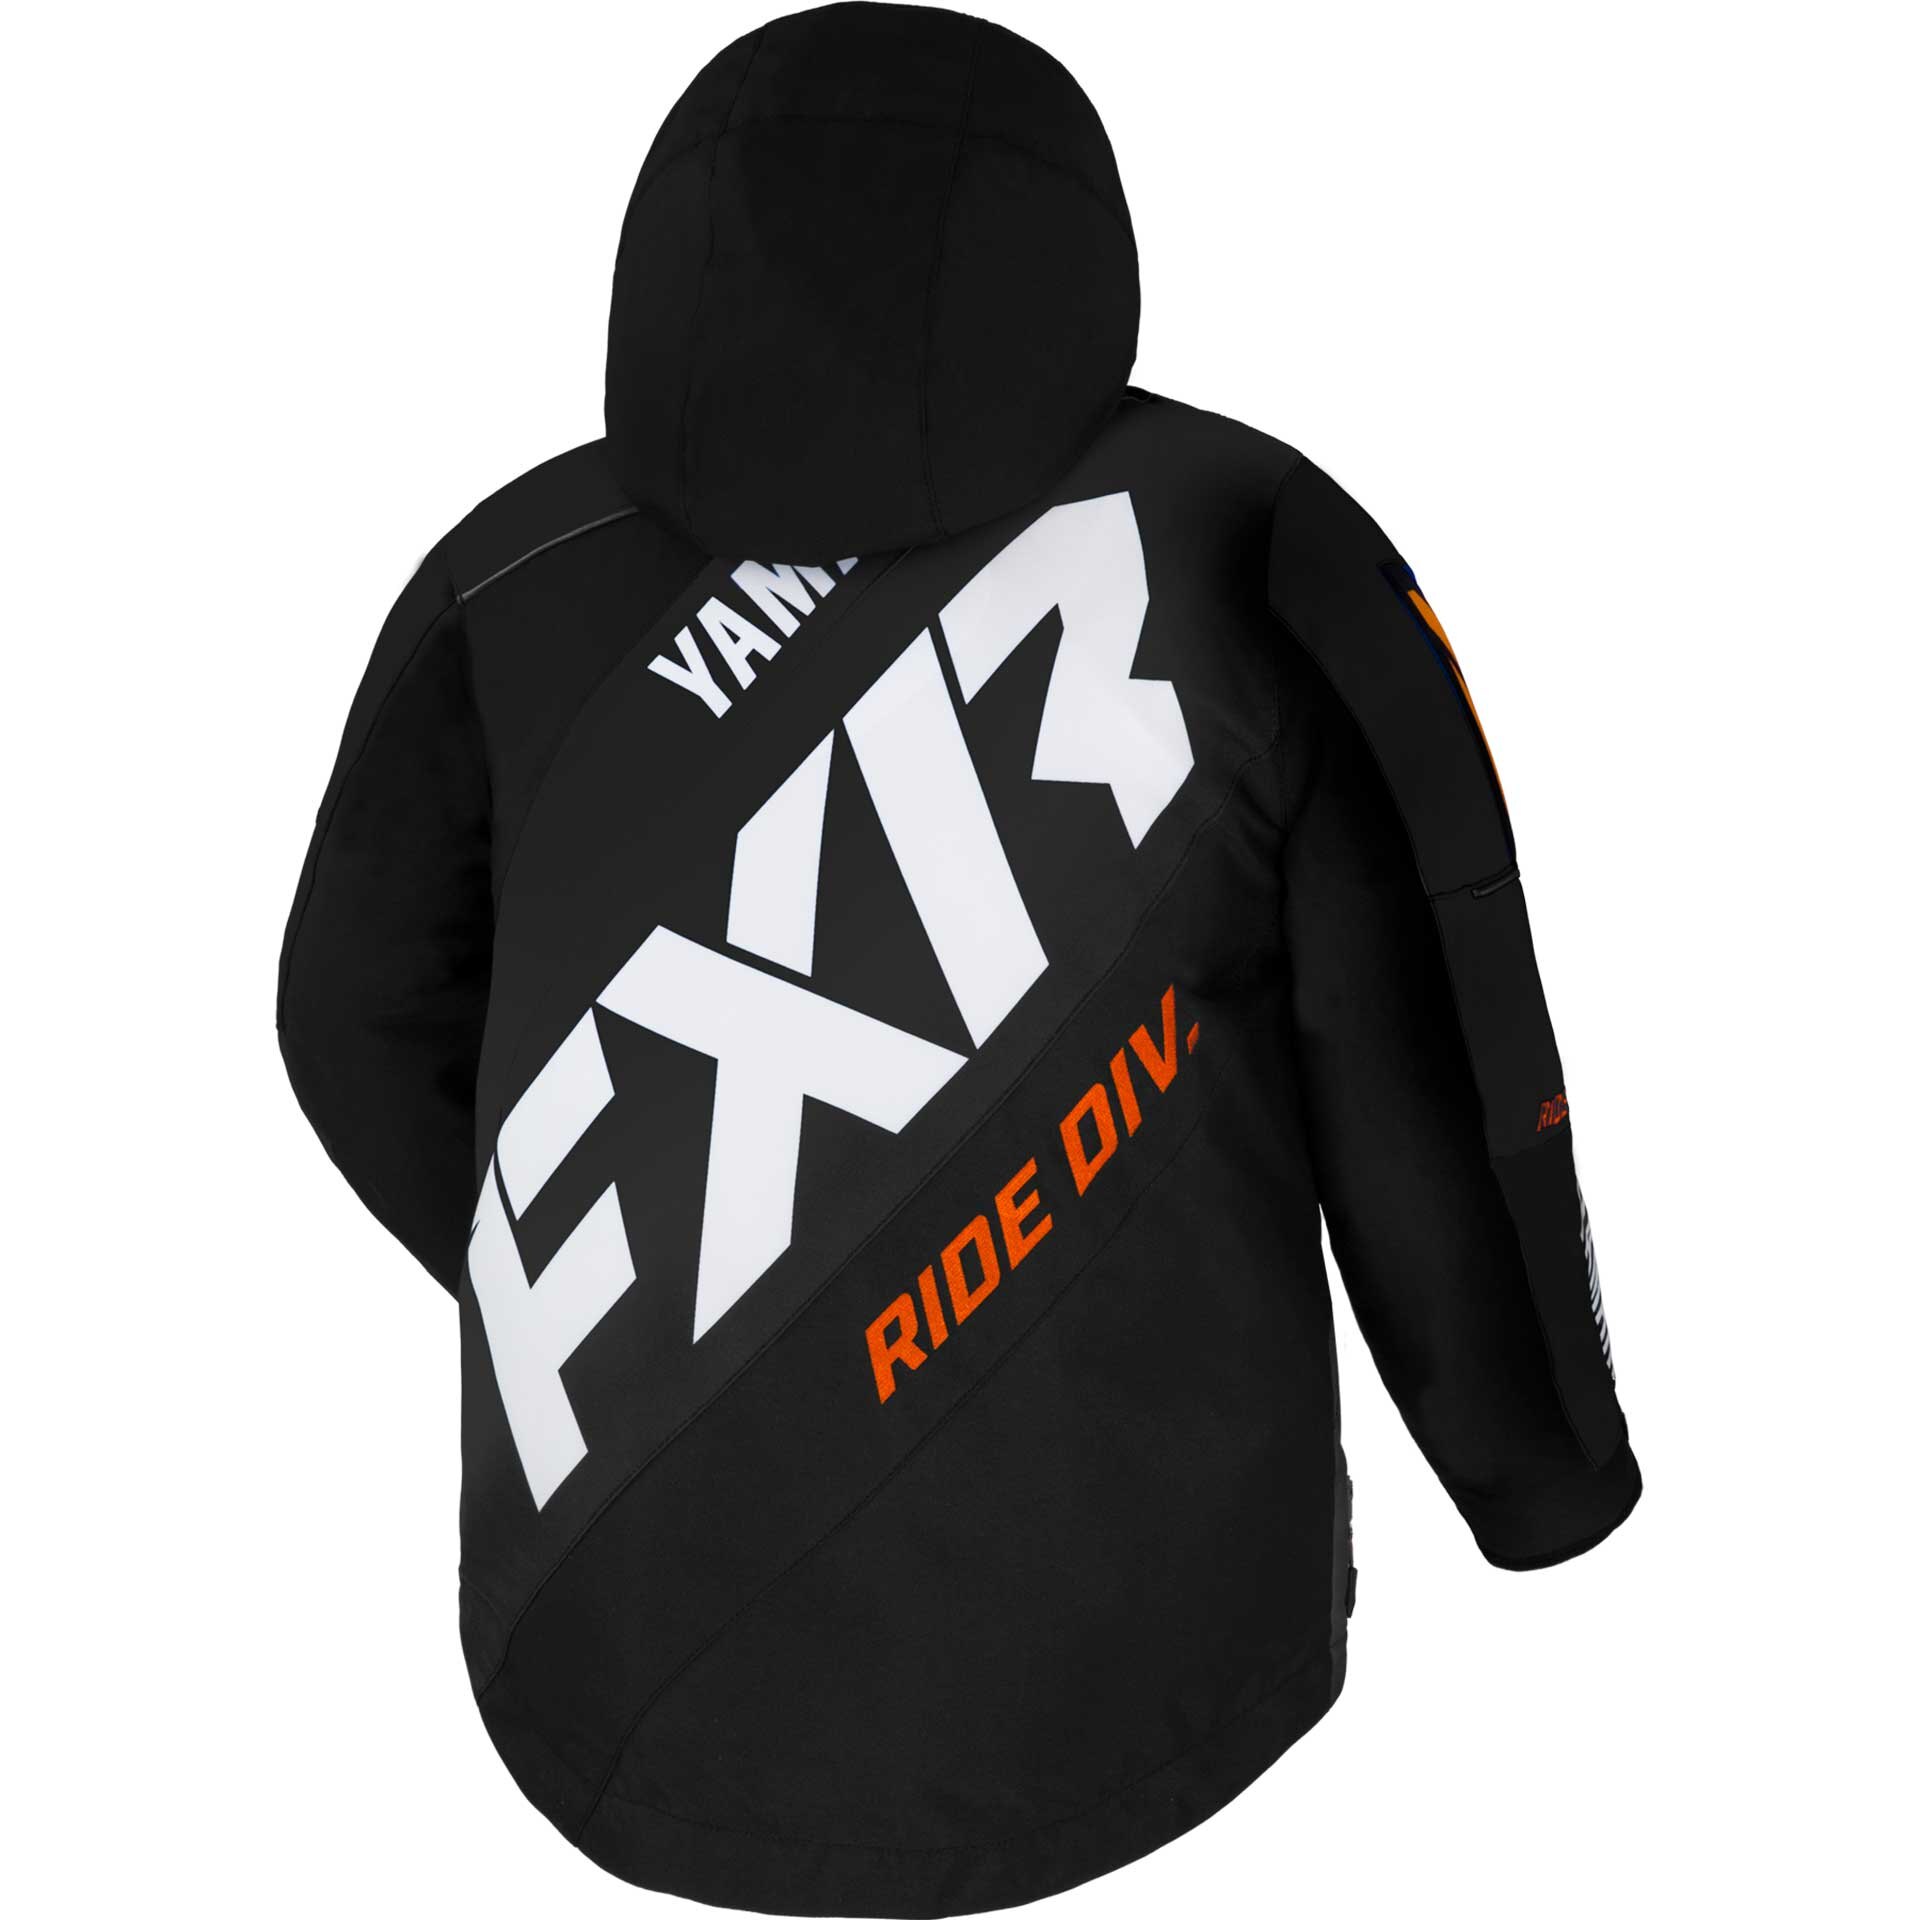 Youth Yamaha CX Jacket by FXR® Size 10 black/darkorange/white